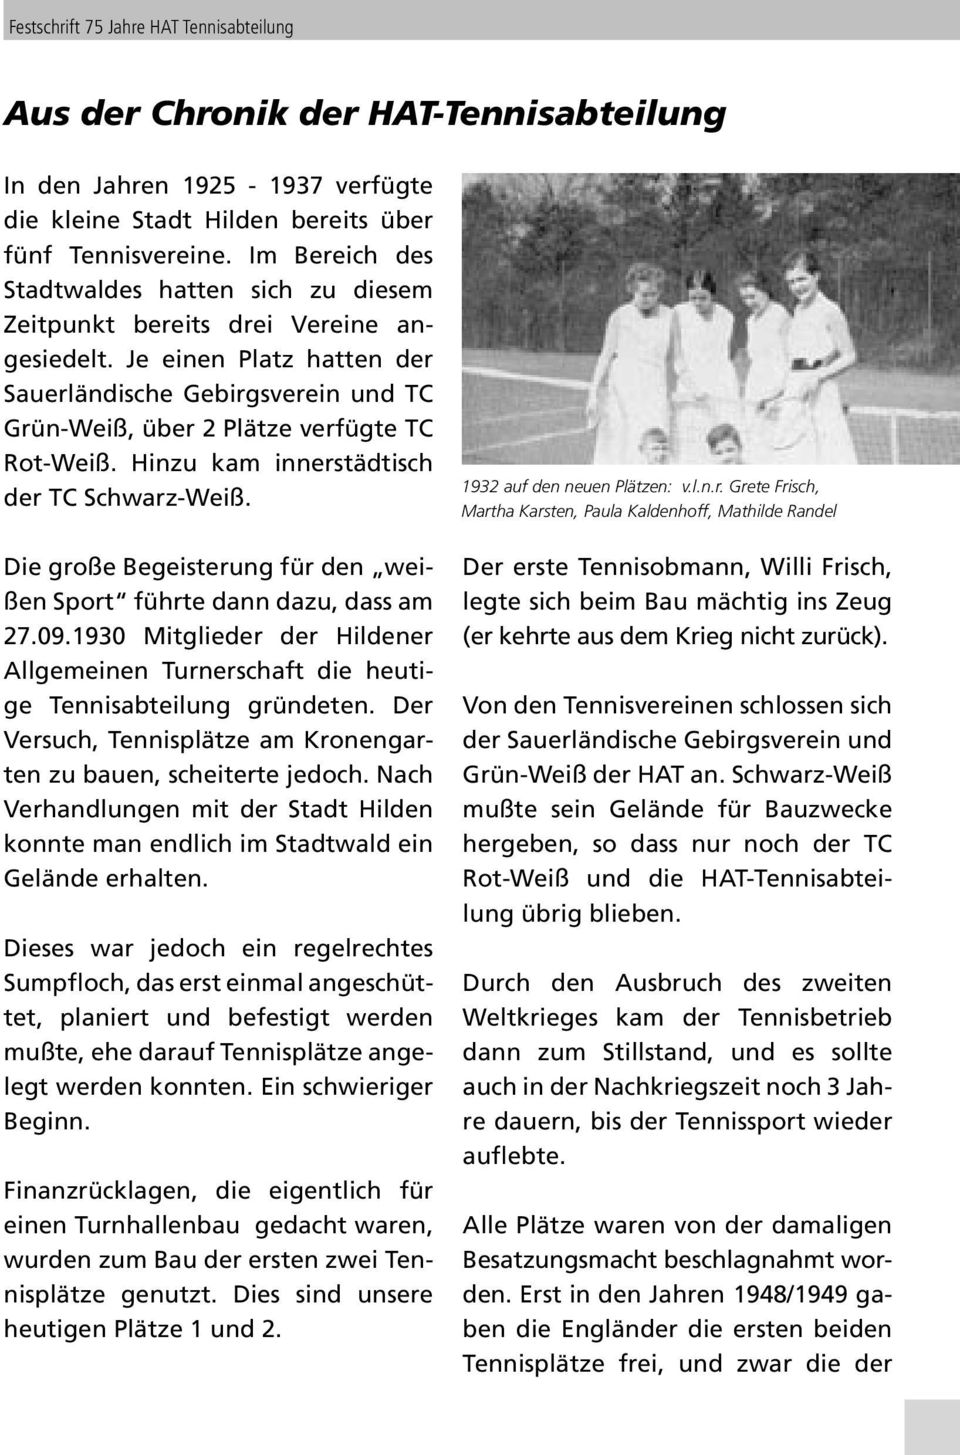 Je einen Platz hatten der Sauerländische Gebirgsverein und TC Grün-Weiß, über 2 Plätze verfügte TC Rot-Weiß. Hinzu kam innerstädtisch der TC Schwarz-Weiß.